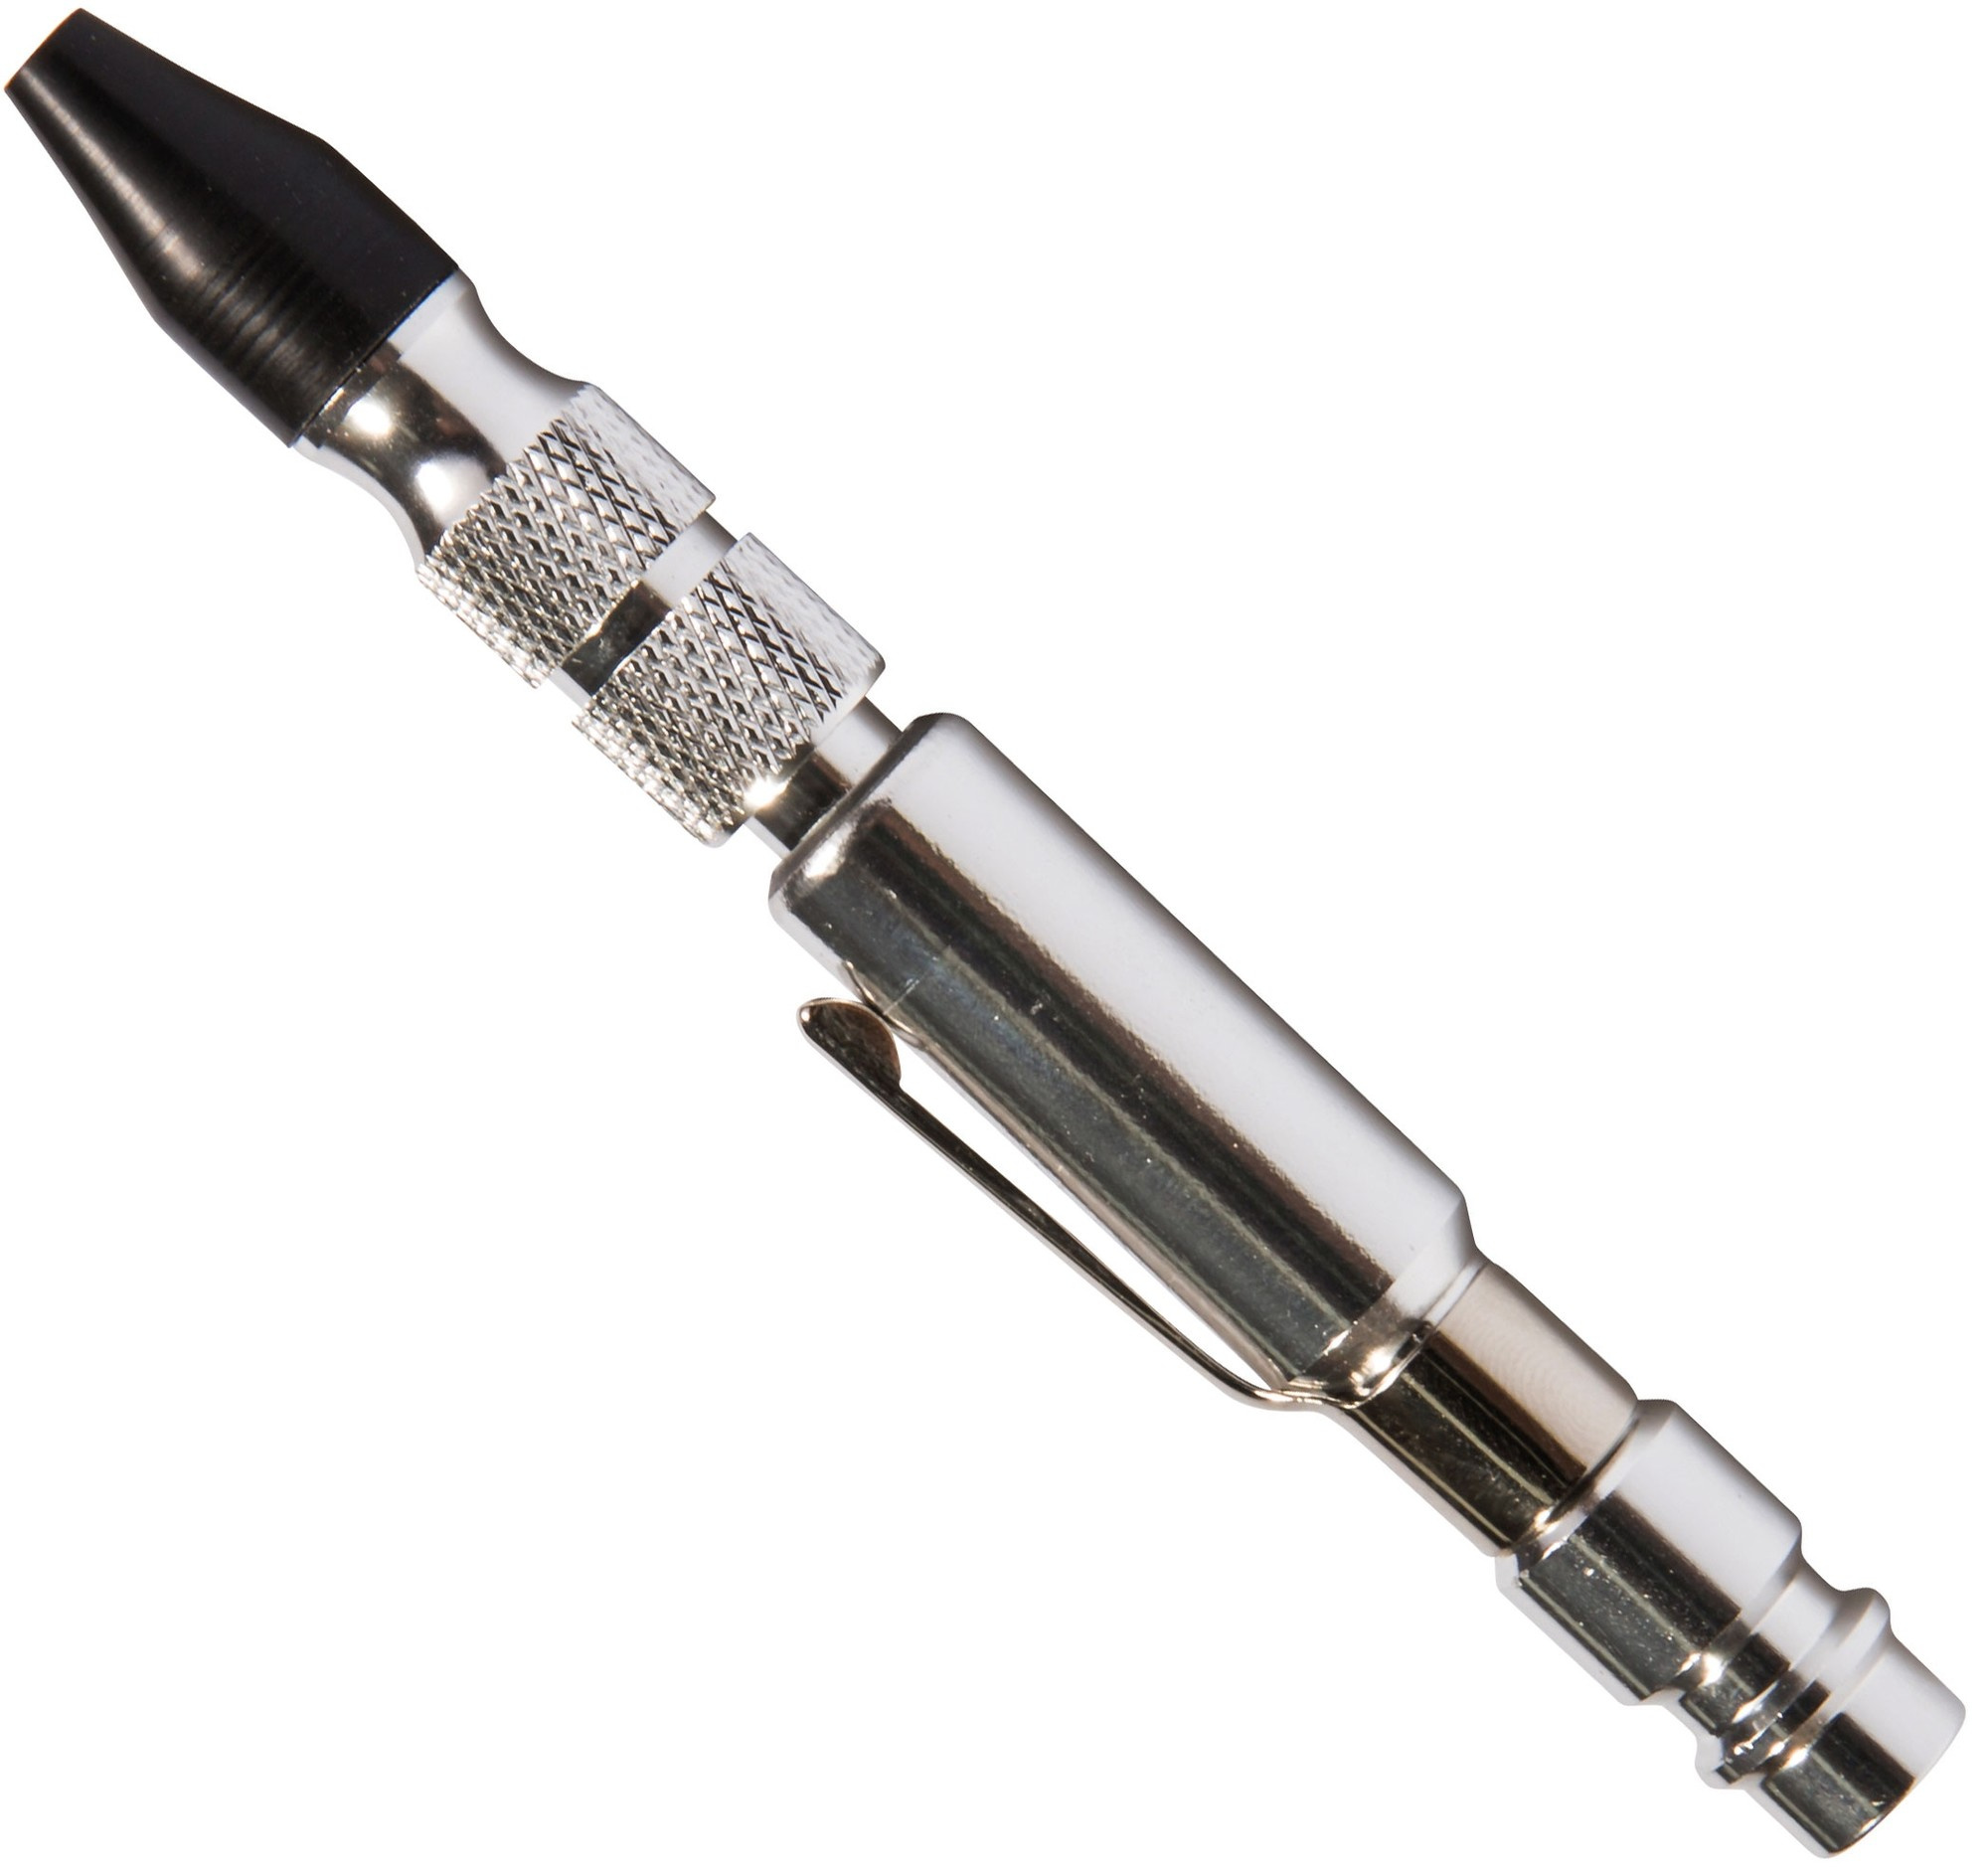 Soufflette type stylo avec buse caoutchouc - RC006 de RODAC - CROP